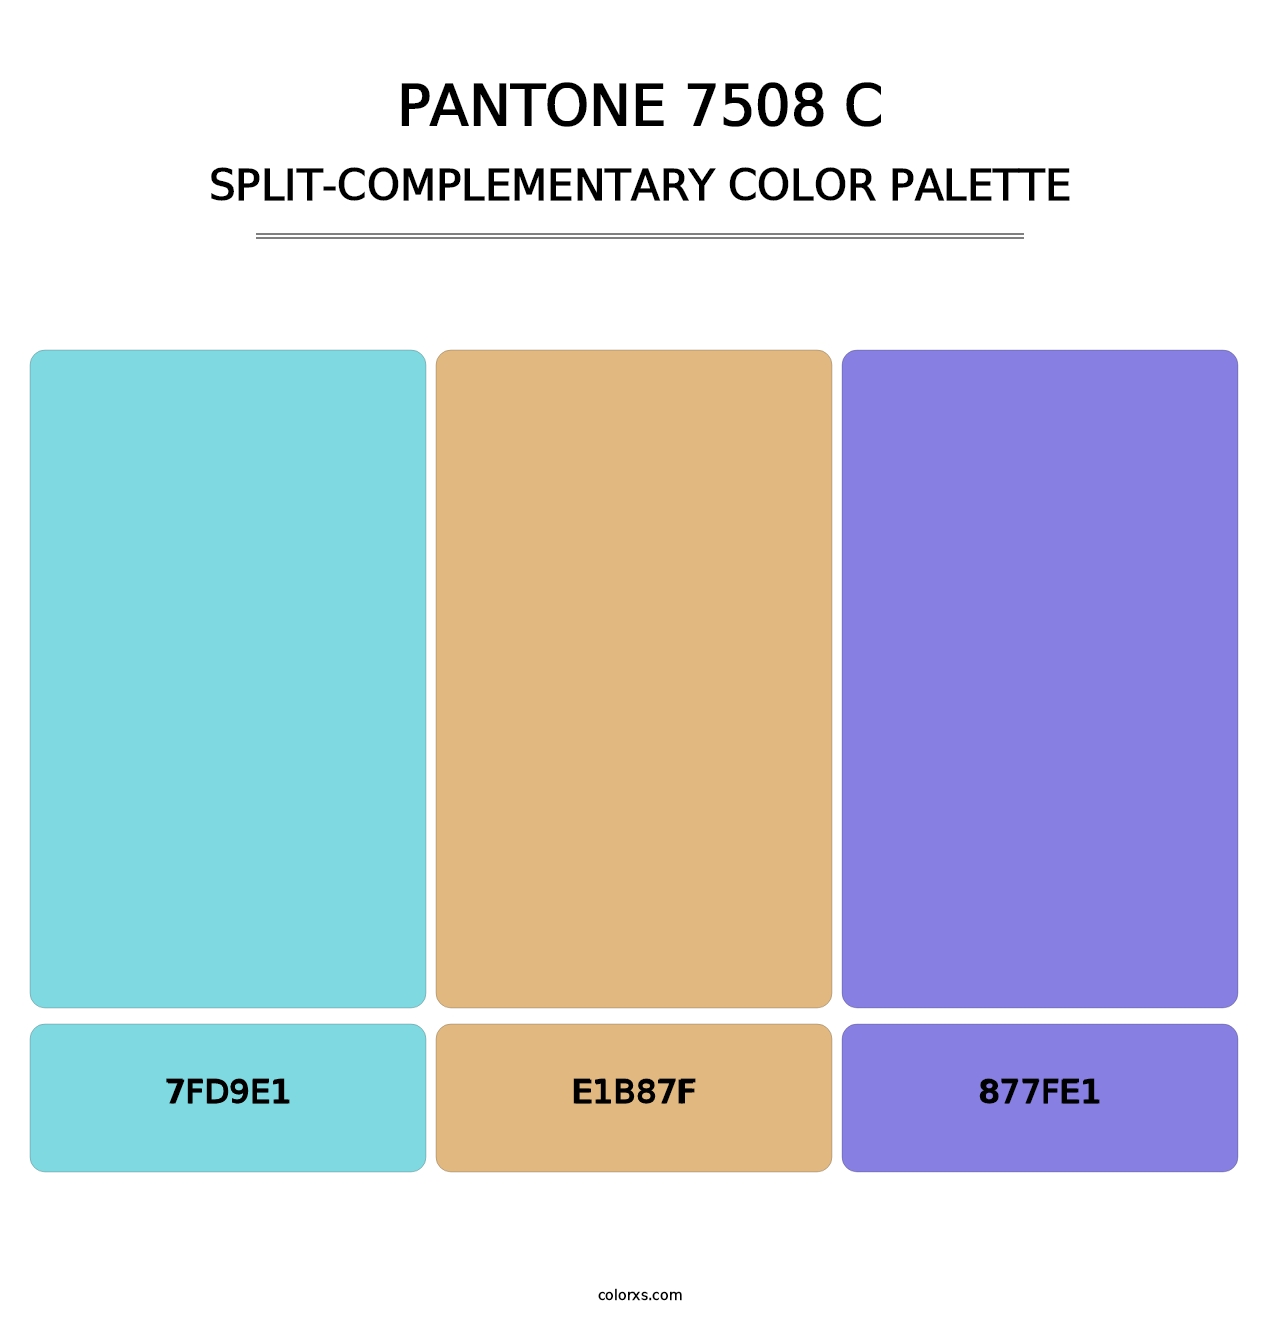 PANTONE 7508 C - Split-Complementary Color Palette